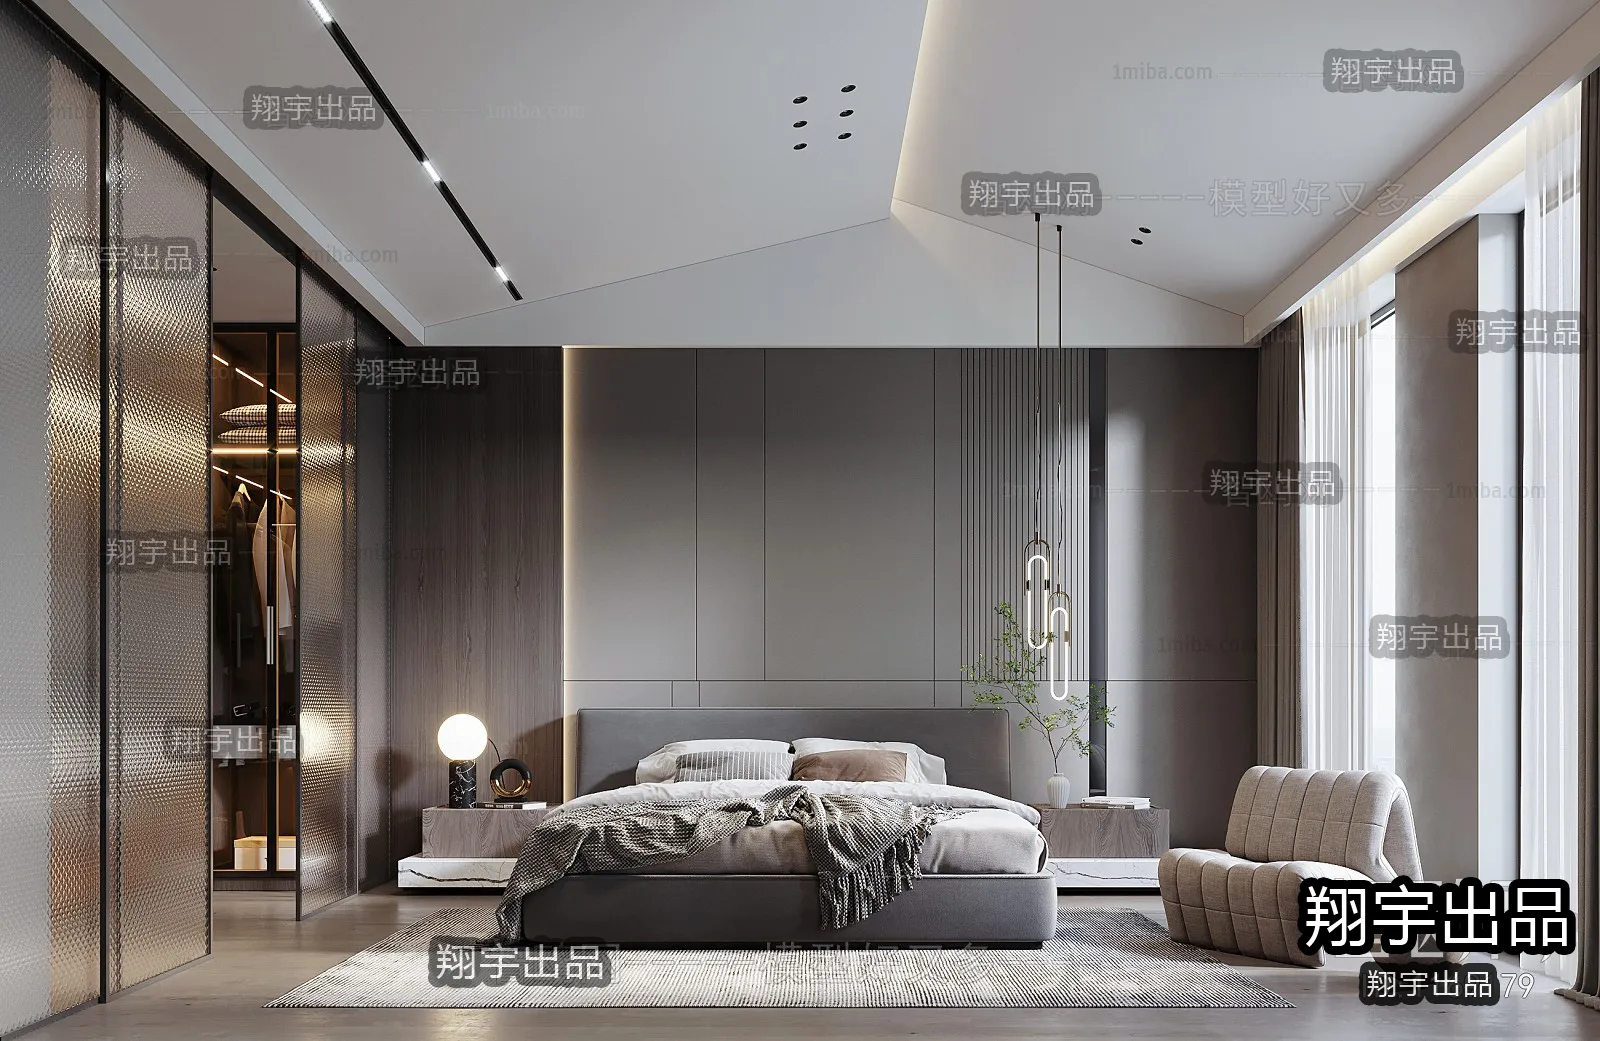 Bedroom – Modern Interior Design – 3D Models – 005